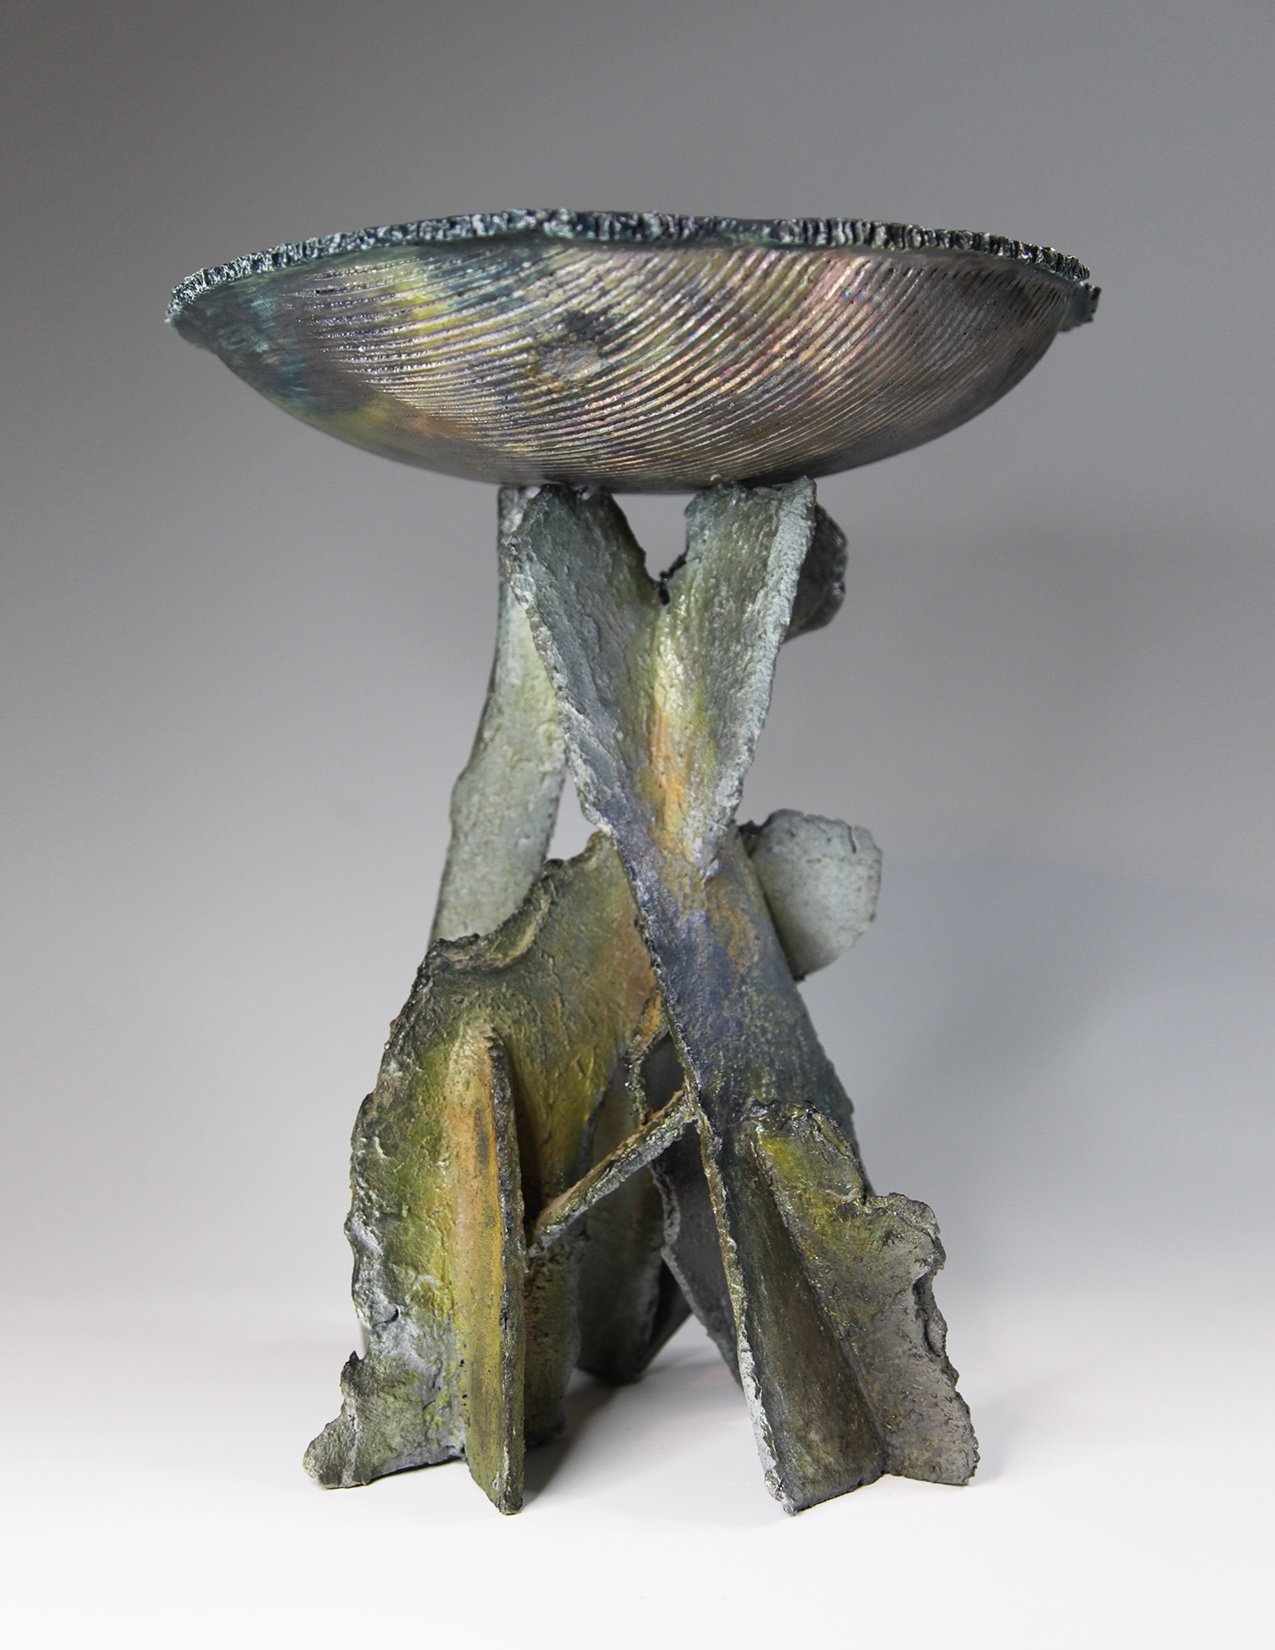  Pedestal Bowl Raku 1, 12”w x 15”t, earthenware 